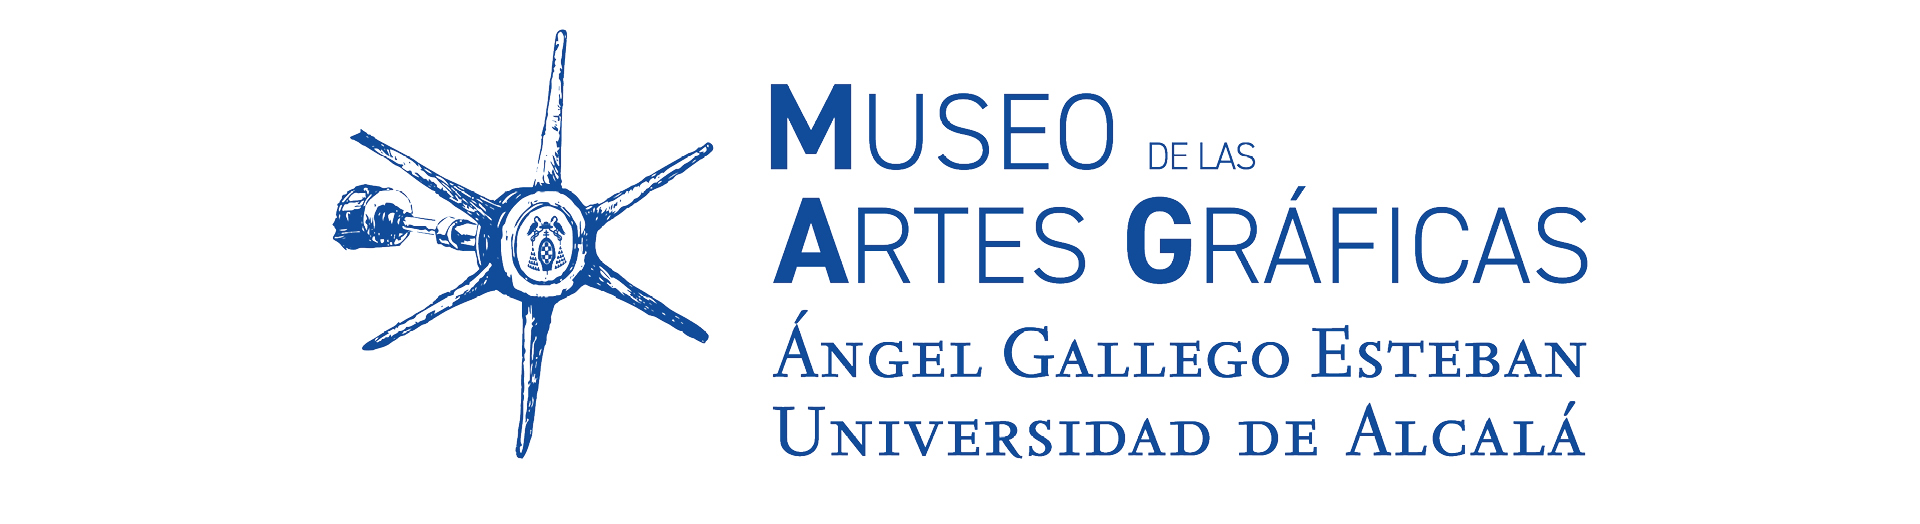 Museo de las Artes Gráficas Ángel Gallego Esteban-Universidad de Alcalá